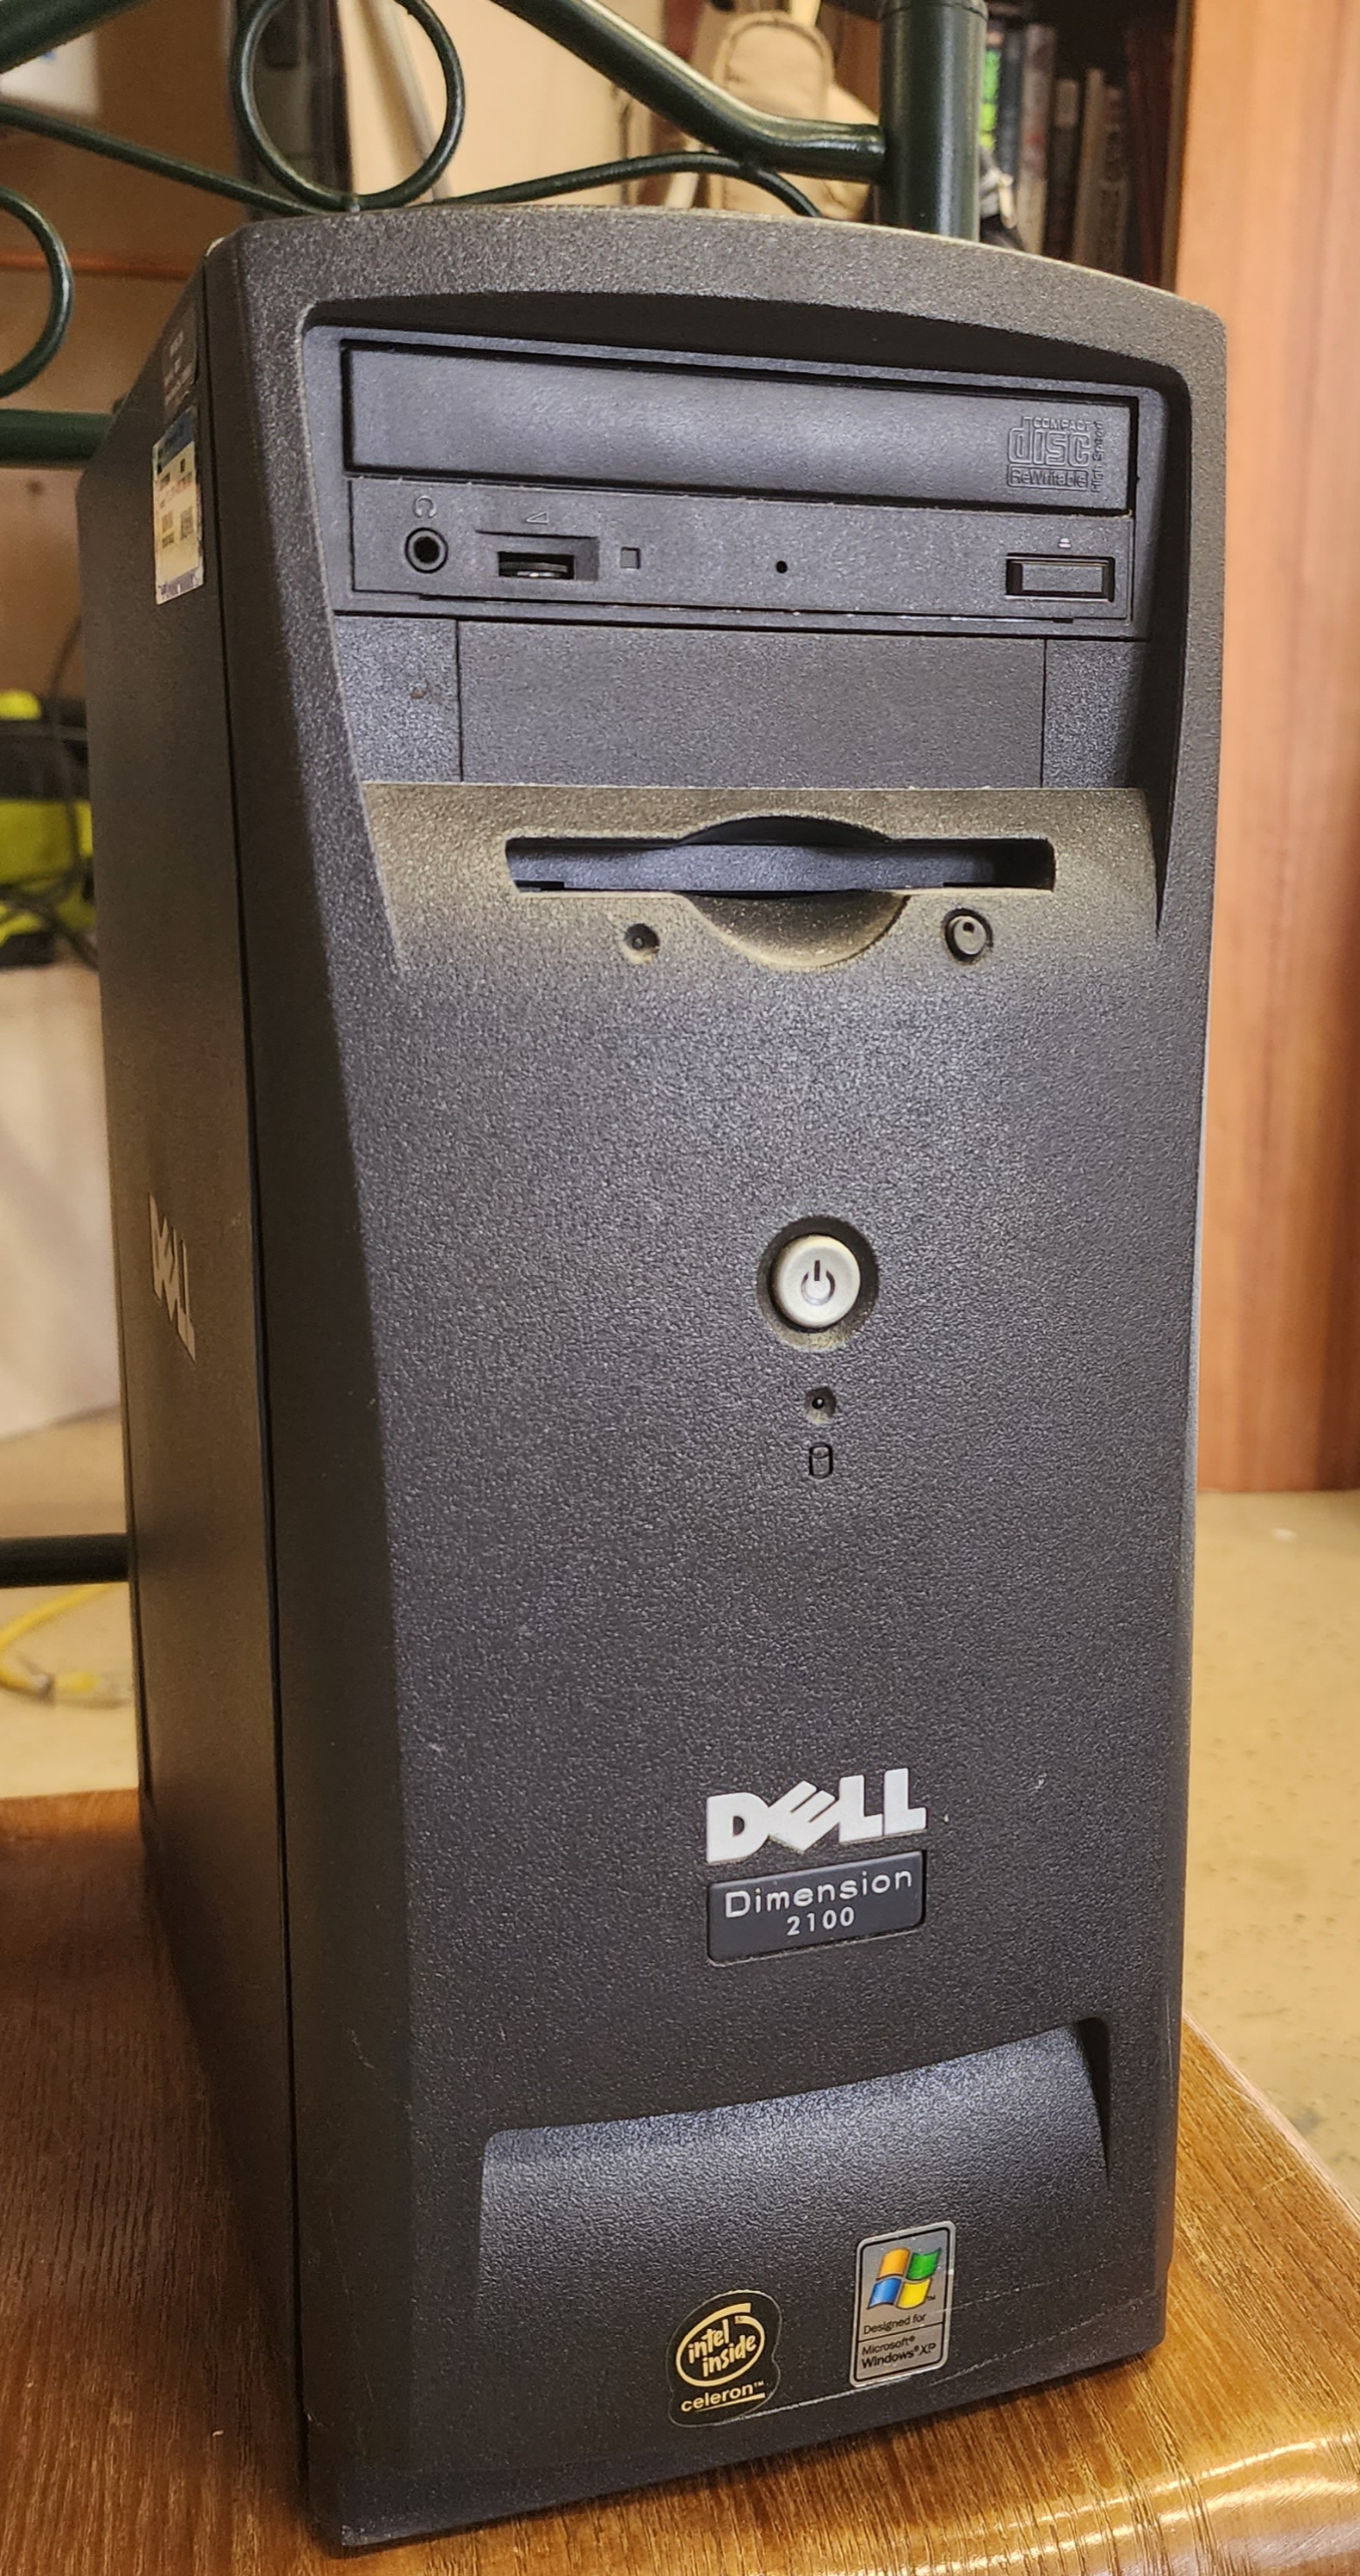 Dell Dimension 2100 Personal Computer